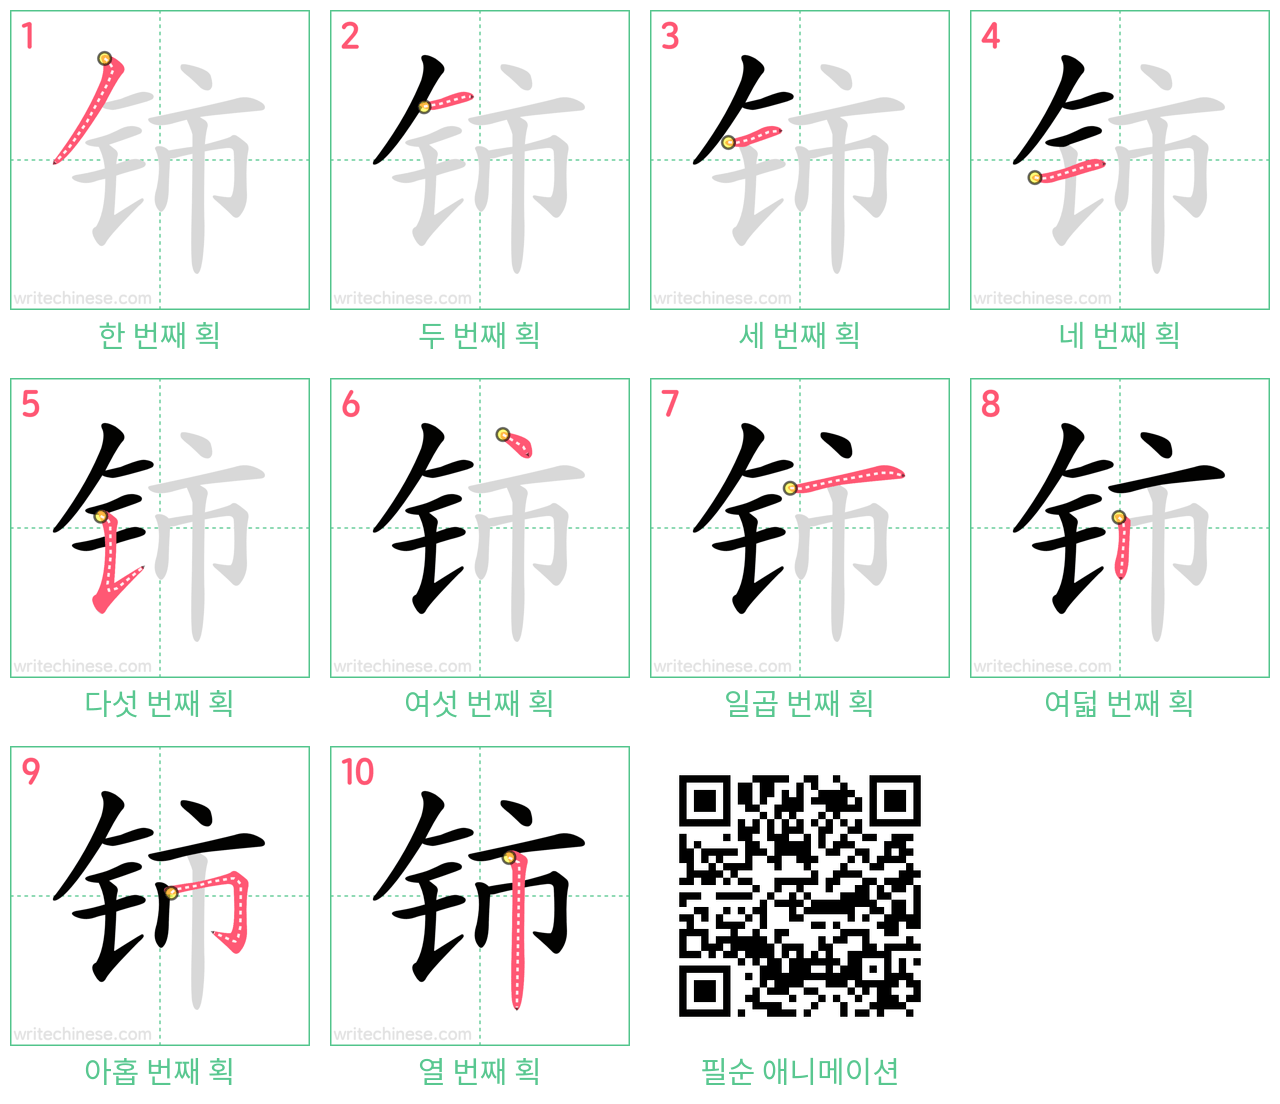 铈 step-by-step stroke order diagrams